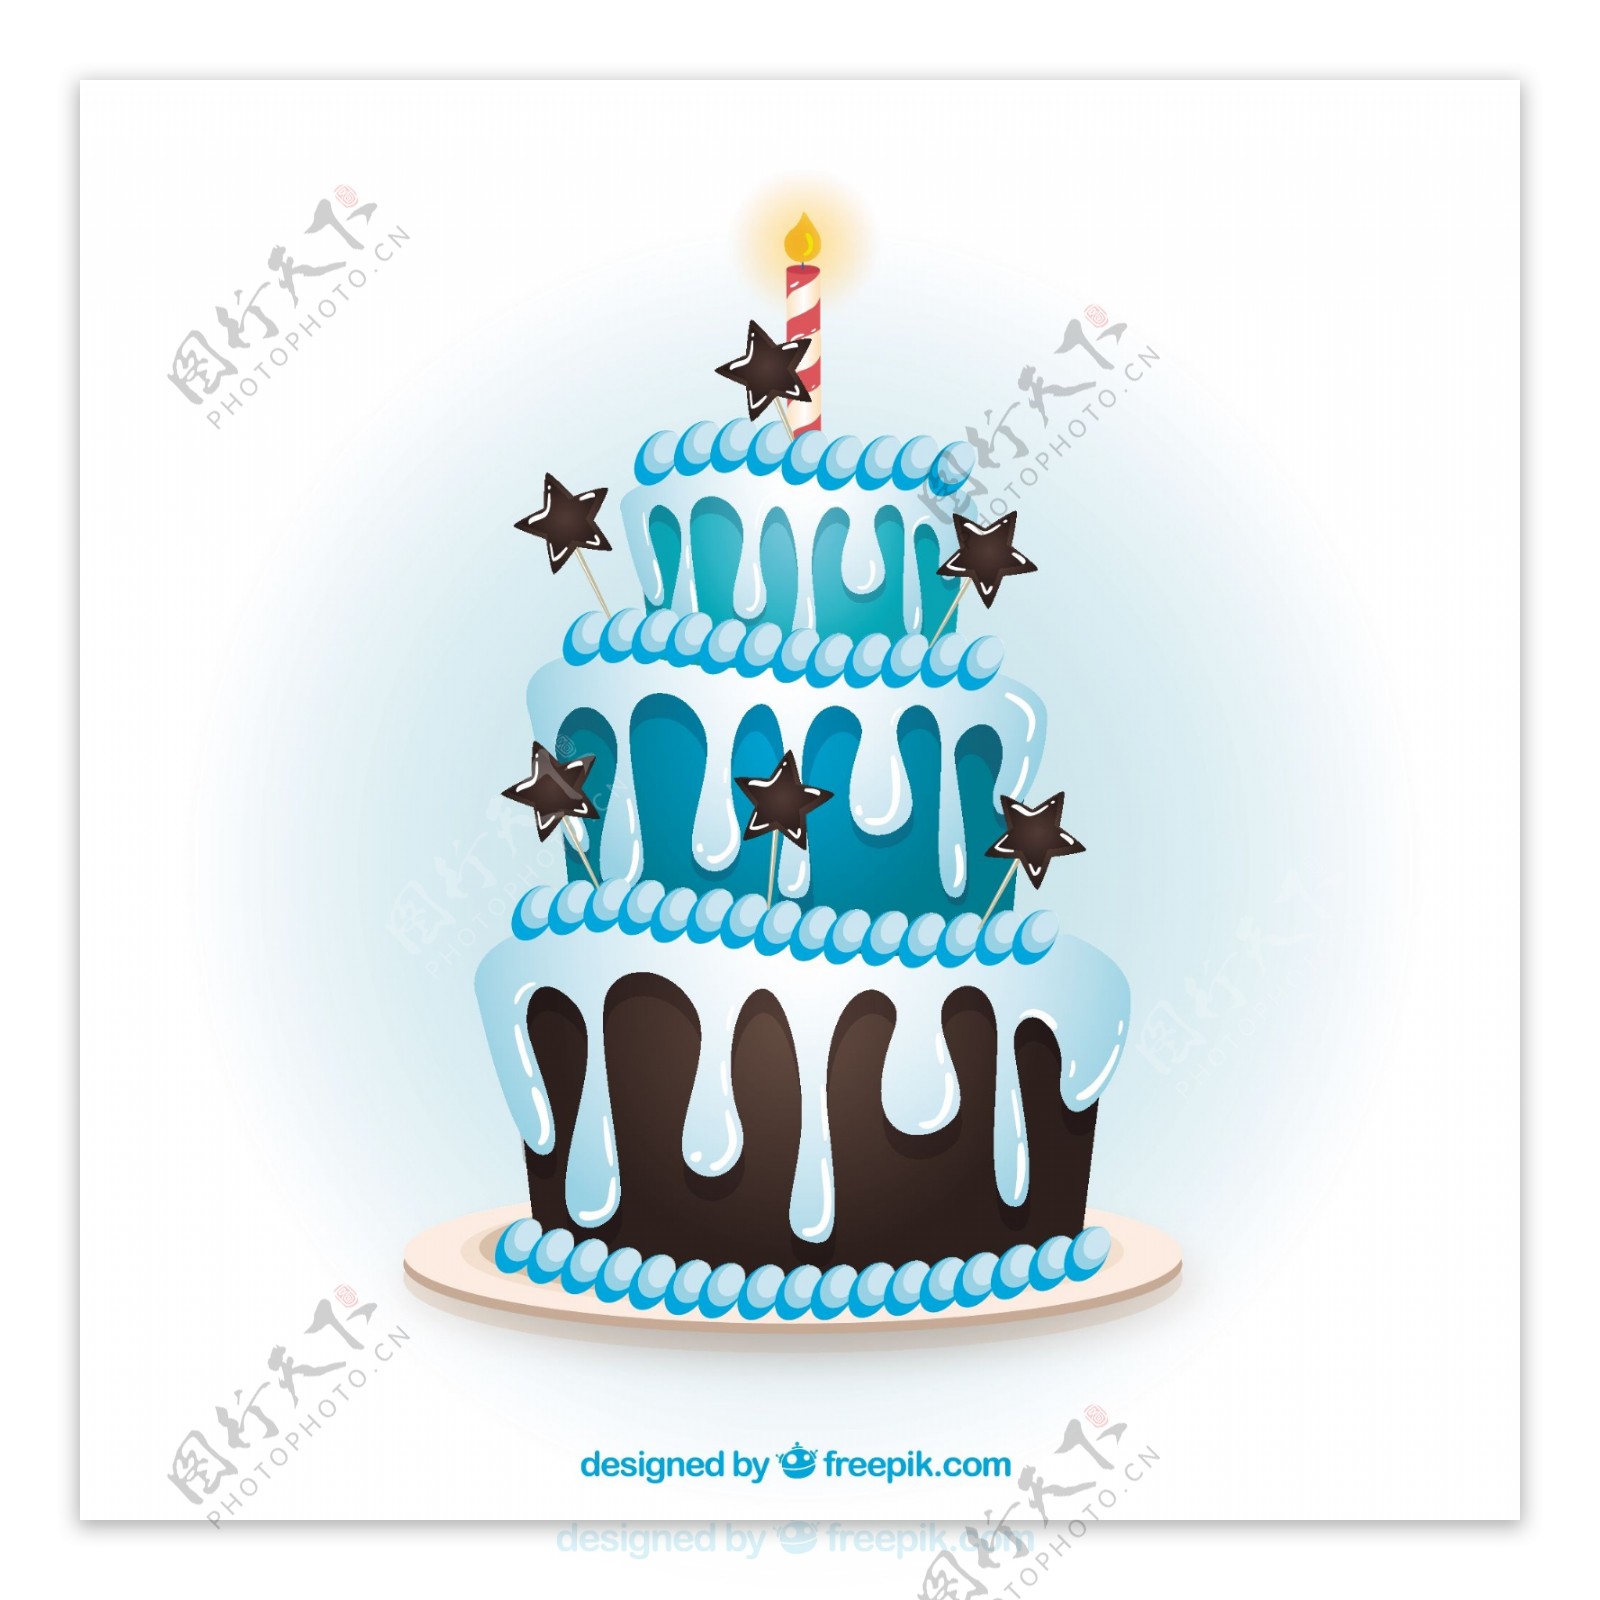 卡通风格的蓝色生日蛋糕